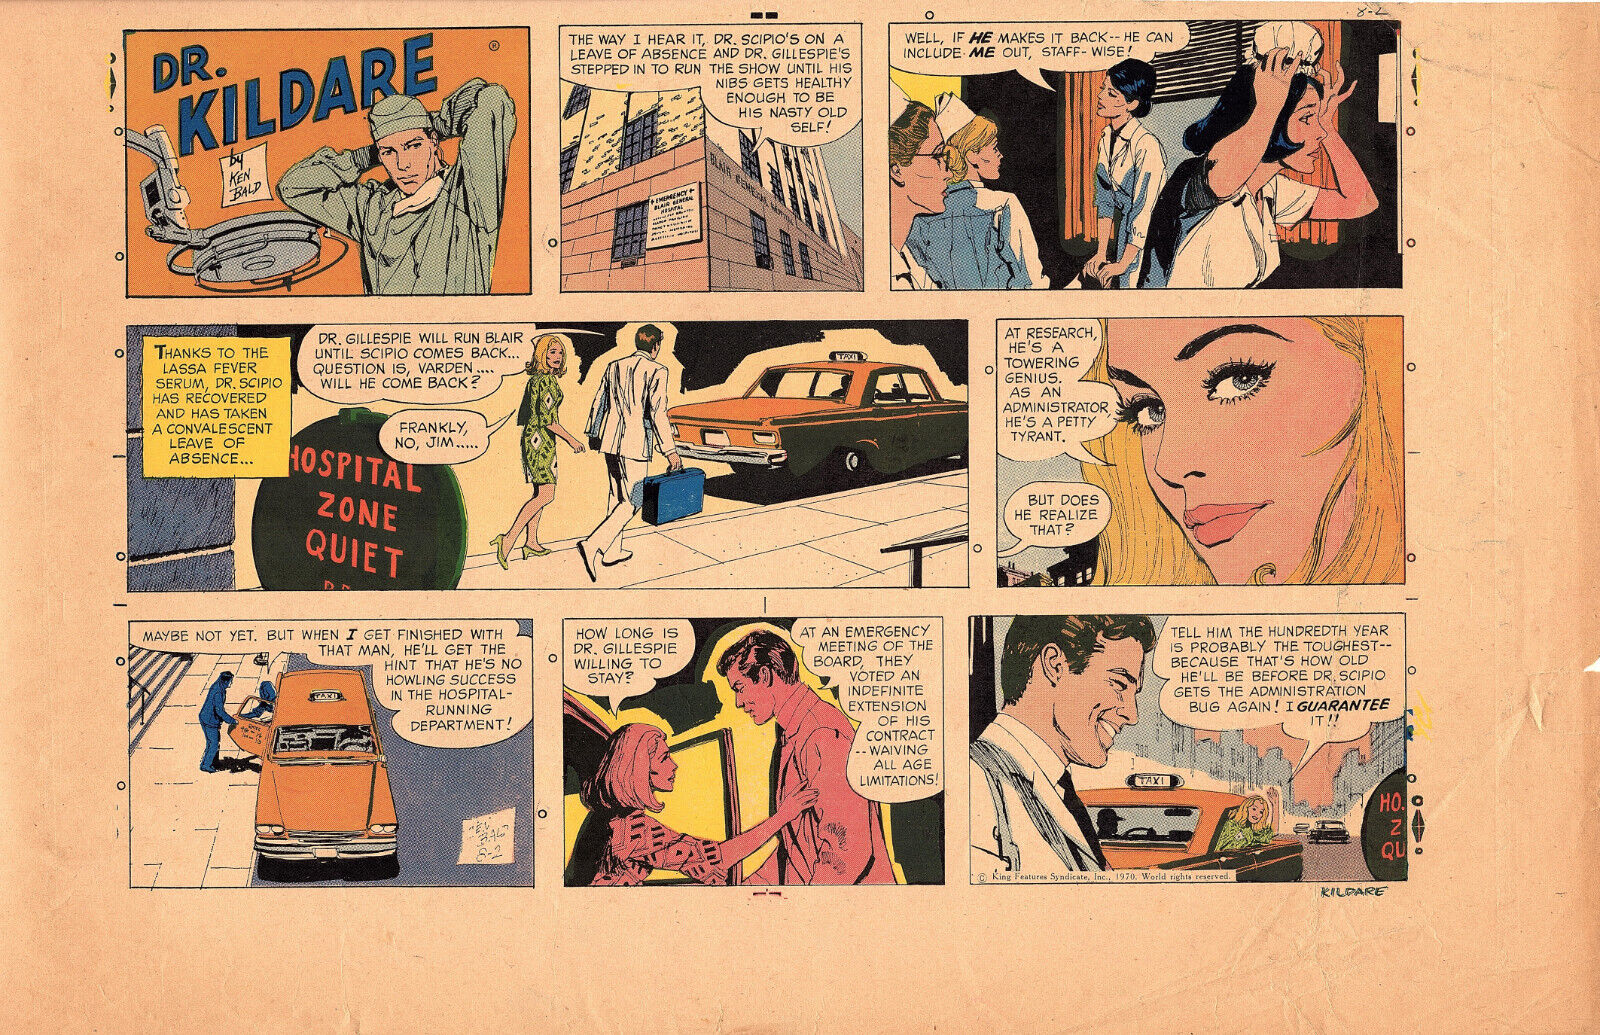 Dr. Kildare 1960s comic strip original printer proofsheet Ken Bald art Near Mint